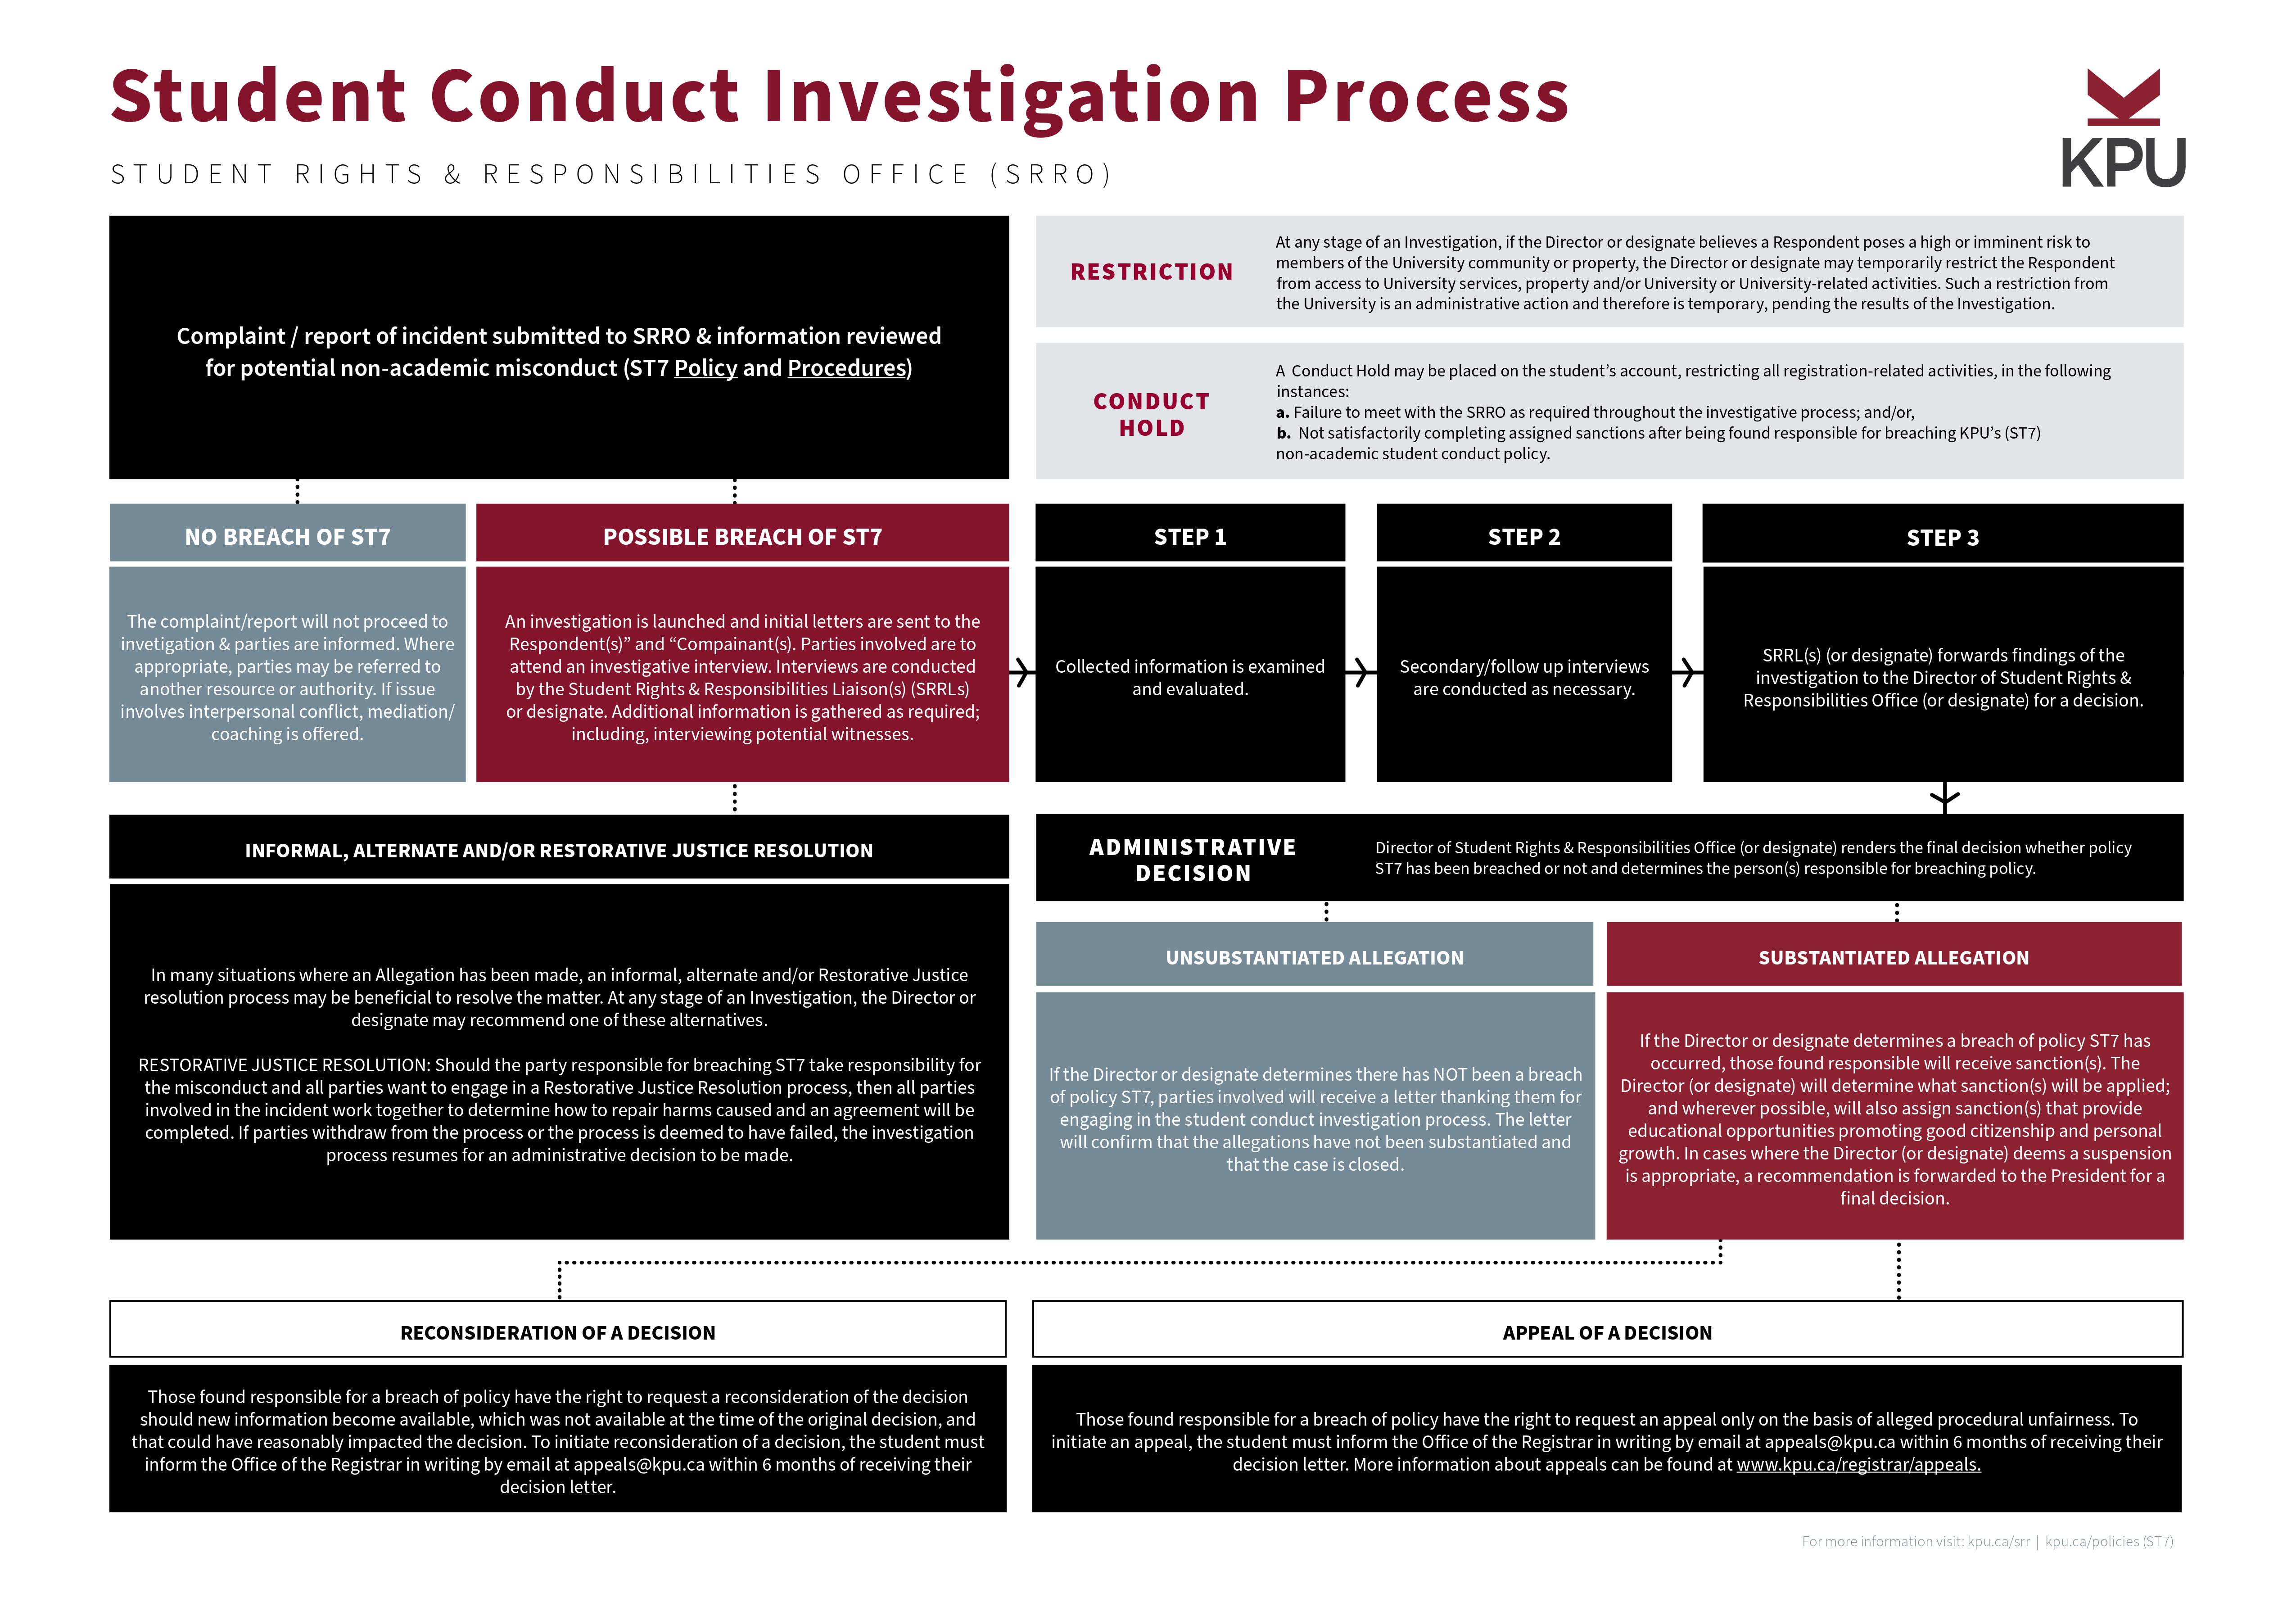 KPU Case Adjudication Process Chart